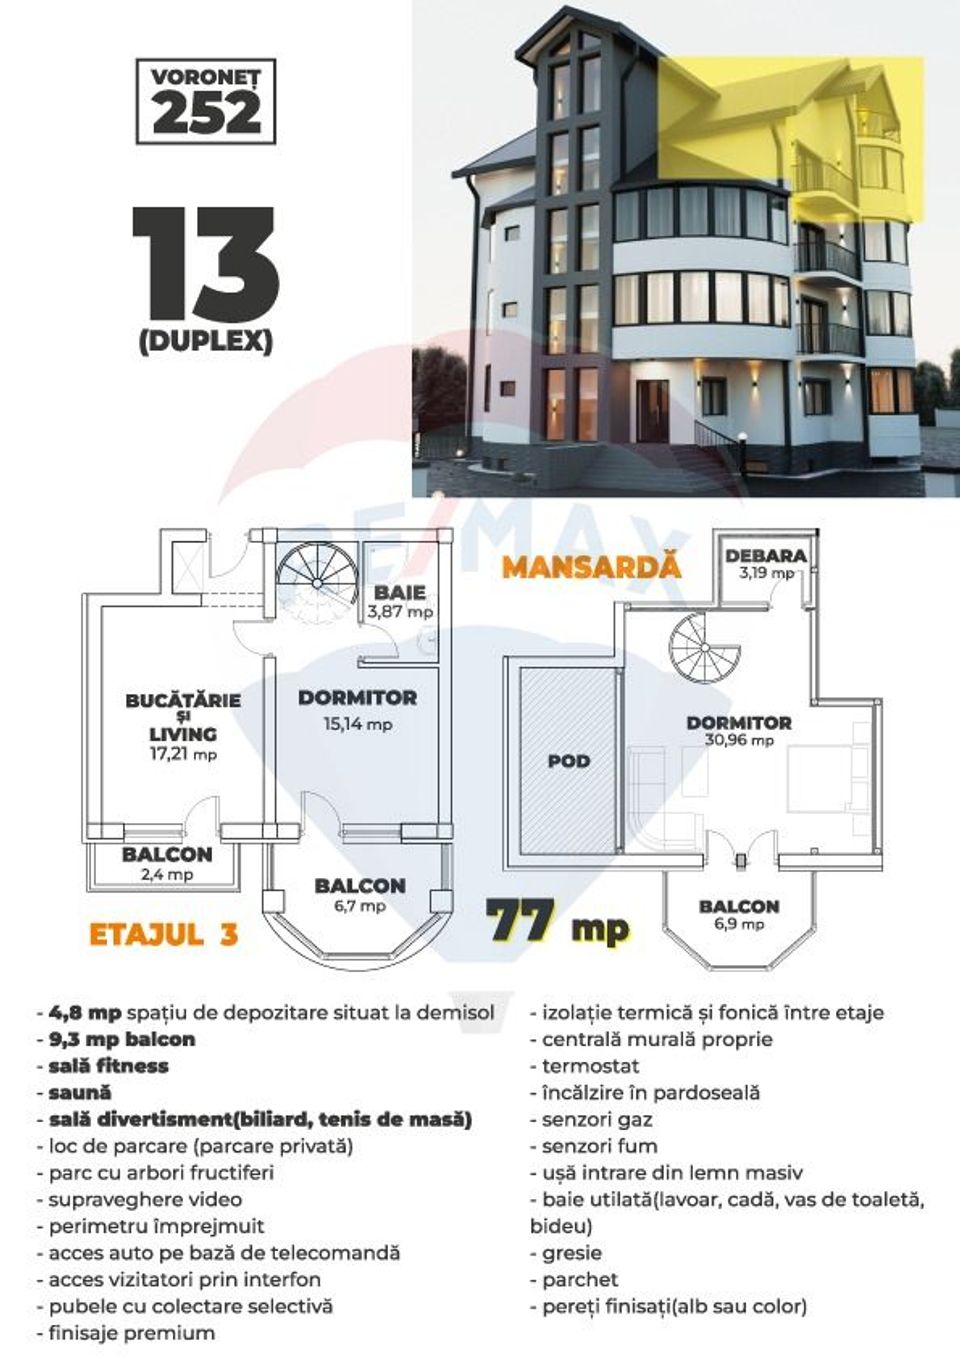 Apartamente LUX de vânzare Voronet 252 - Gura Humorului - Bucovina